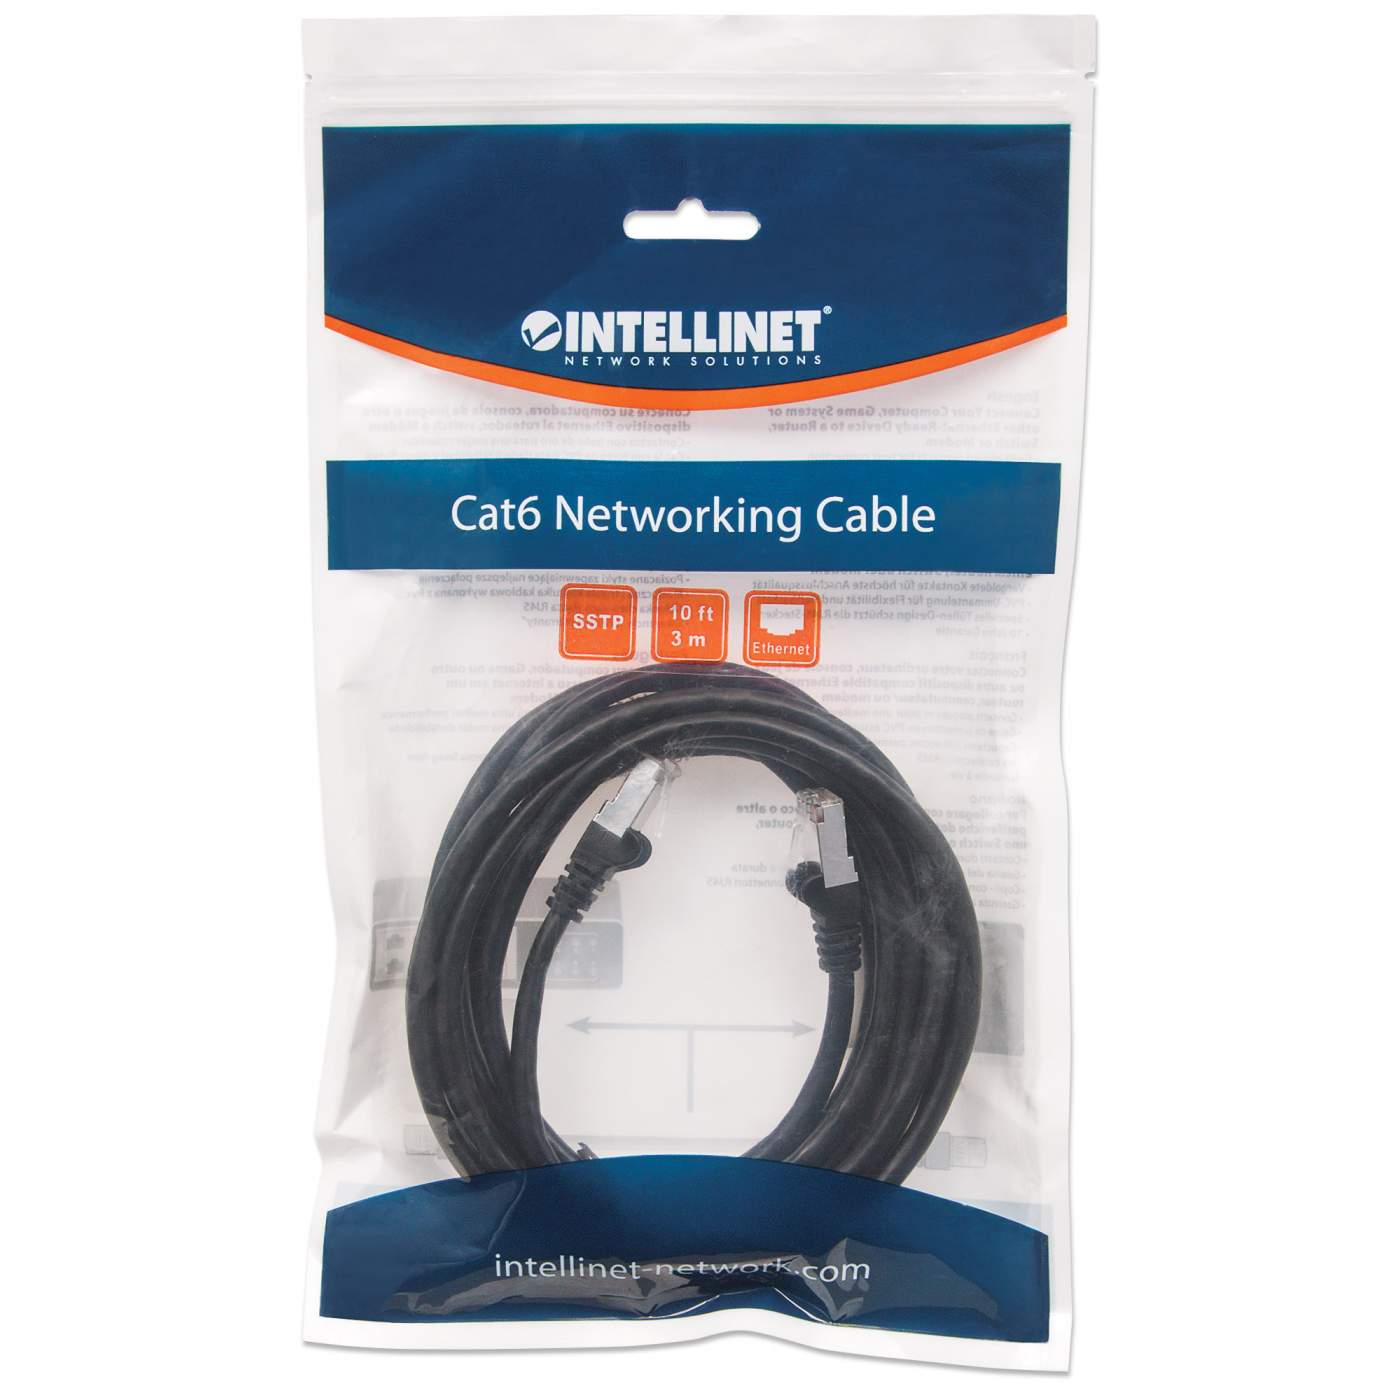 Cable - Black CAT6a Ethernet Cable 5m (6ASPAT5MBK) - Cat 6a Cables